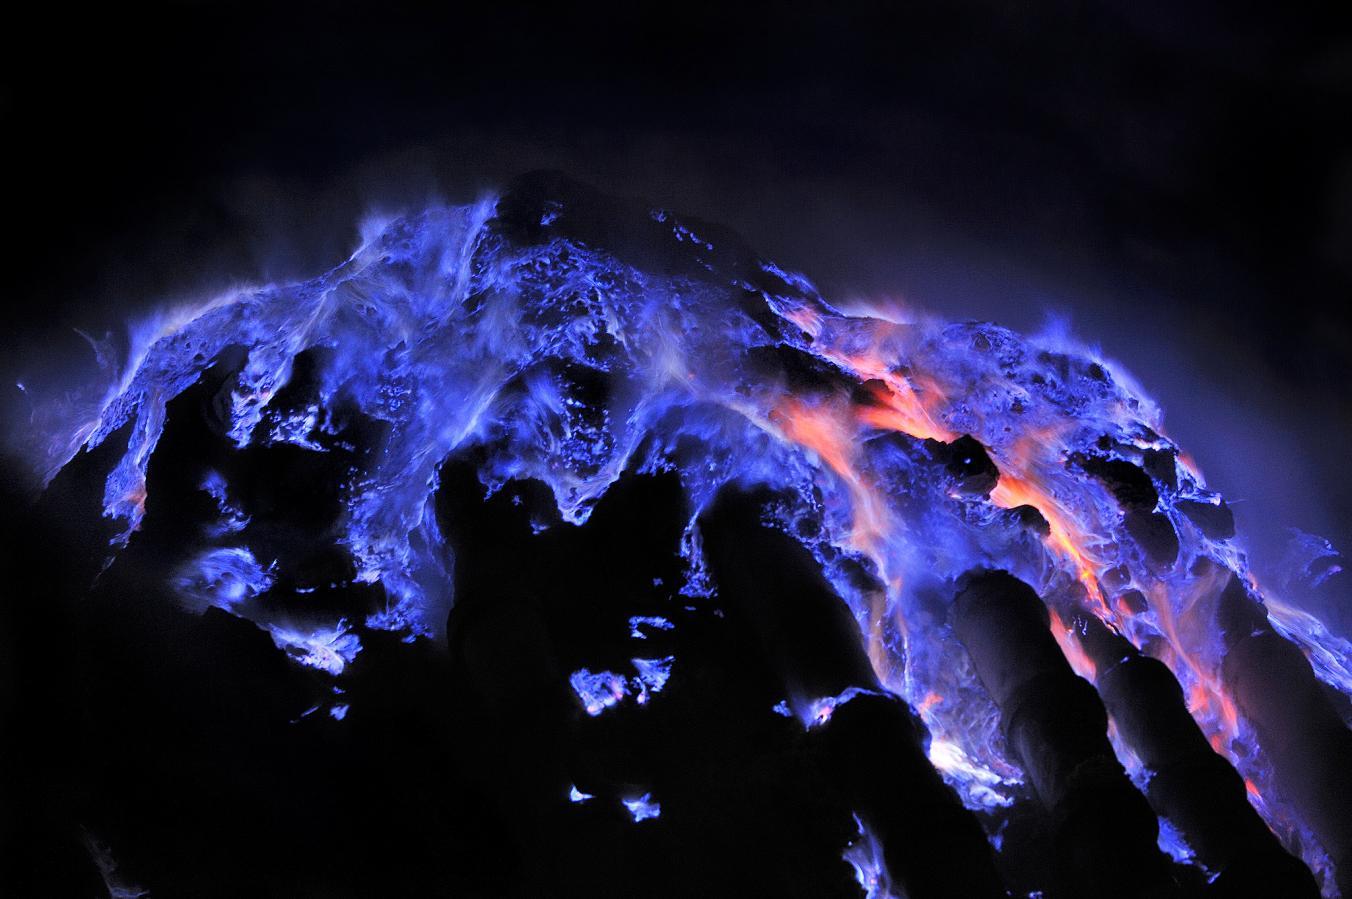 World S 絶景スポット エチオピアのダロル火山 昼はカラフルな色の沼や岩が目の前に広がり 夜は暗闇の中に青い炎が輝いています 硫黄と温度の変化により景色を変化させているそうです まるでファンタジーの世界 T Co 7a3ltd66uc Twitter